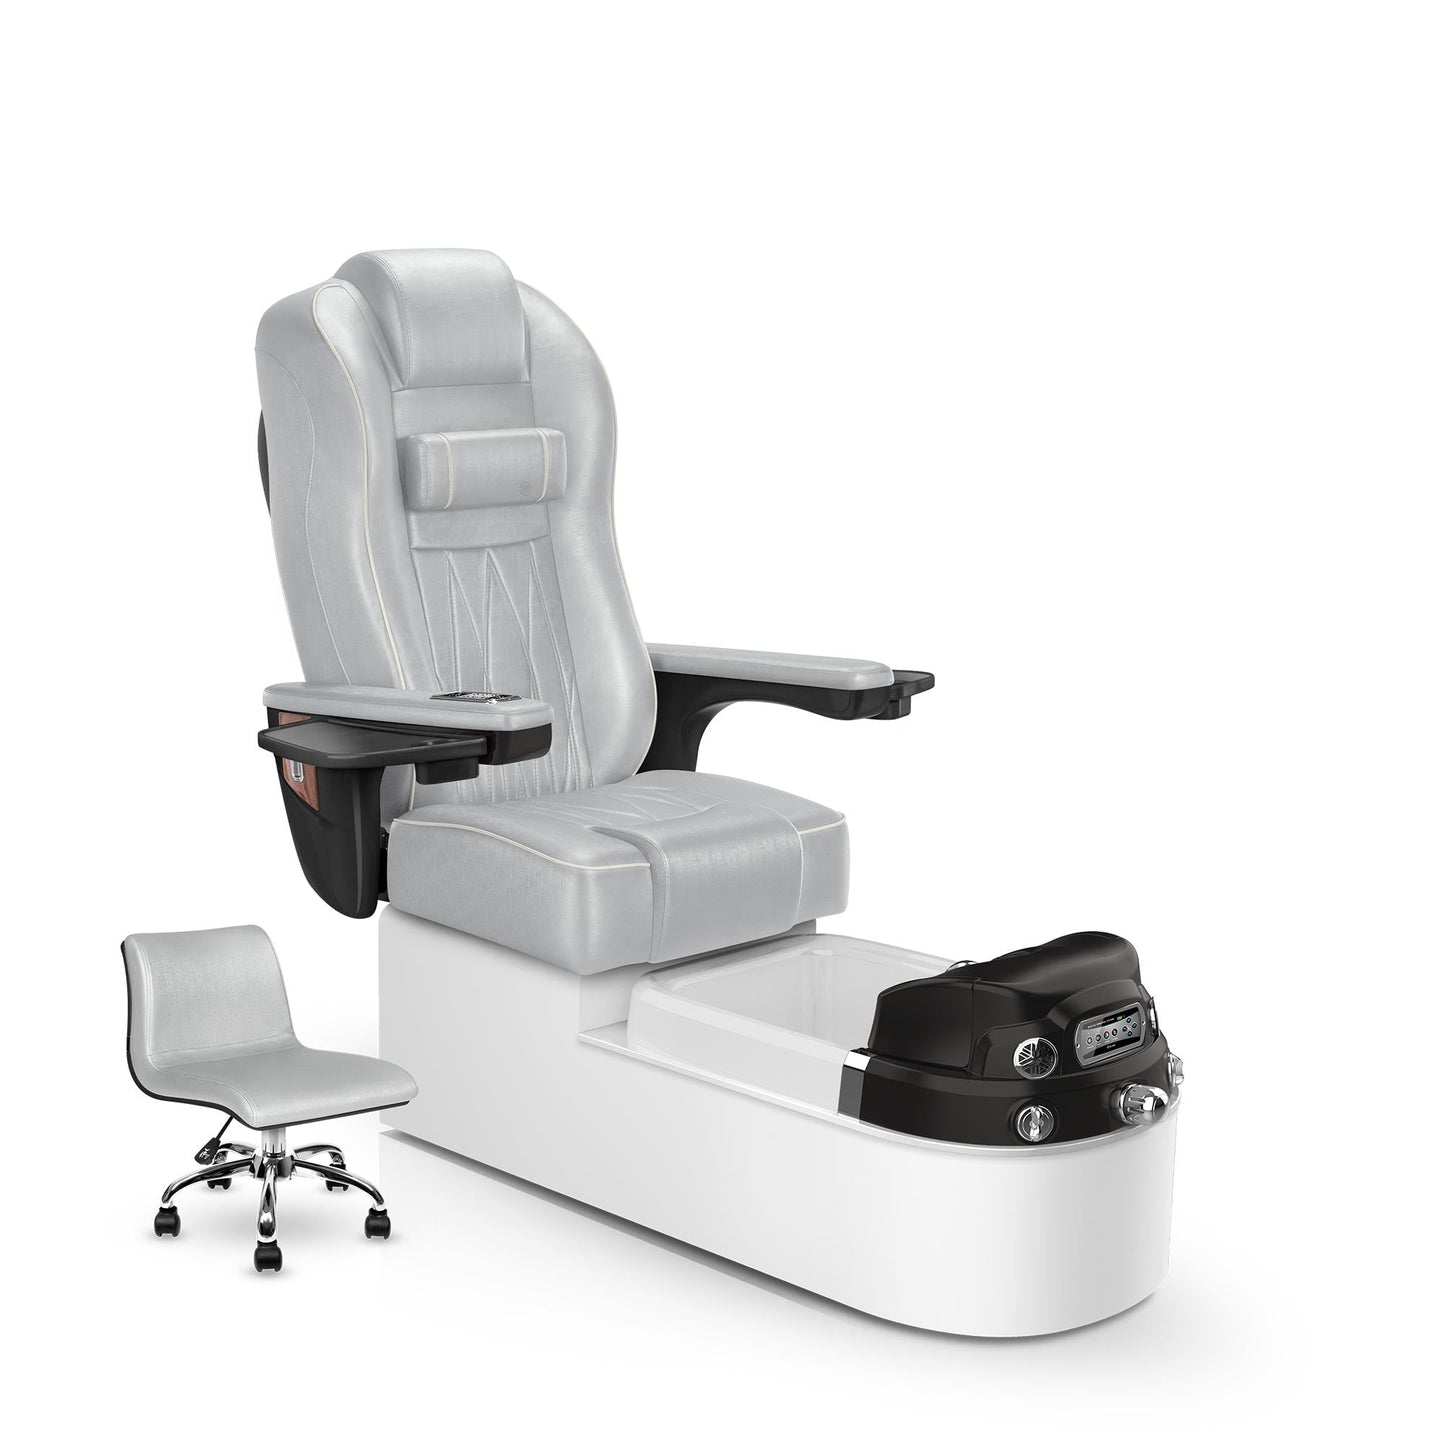 Lexor Envision pedicure chair platinum cushion and white pearl base